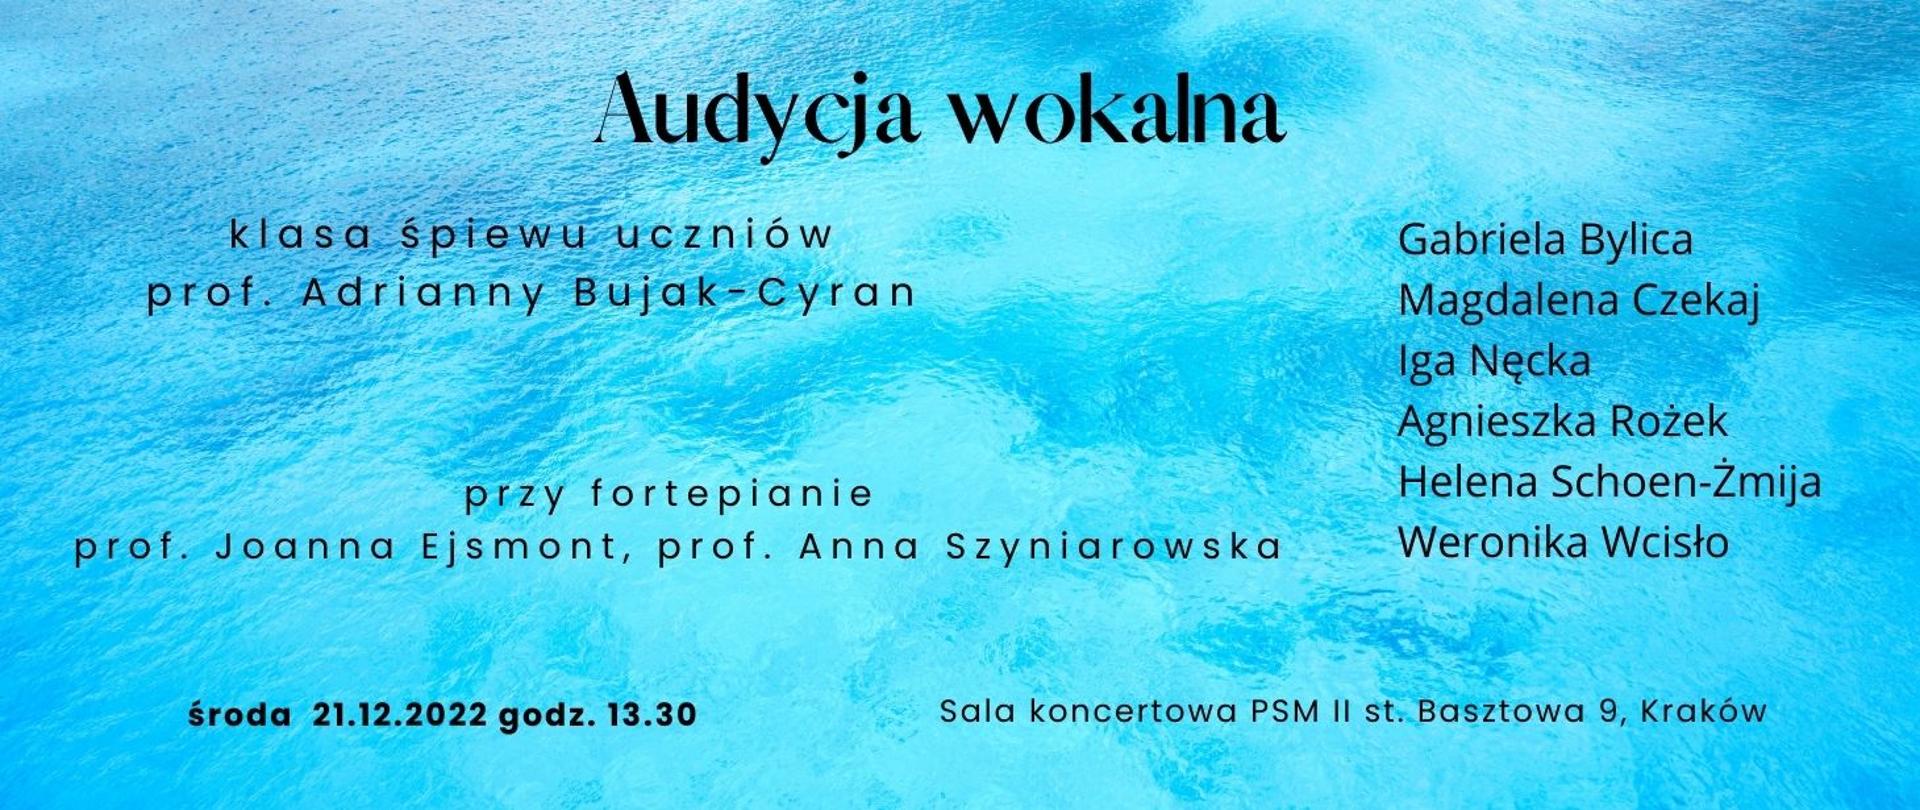 Plakat na niebieskim tle motyw woda napis audycja wokalna klasa śpiewu uczniów prof. Adrianny Bujak Cyran 21.12.2022 godz. 13.30